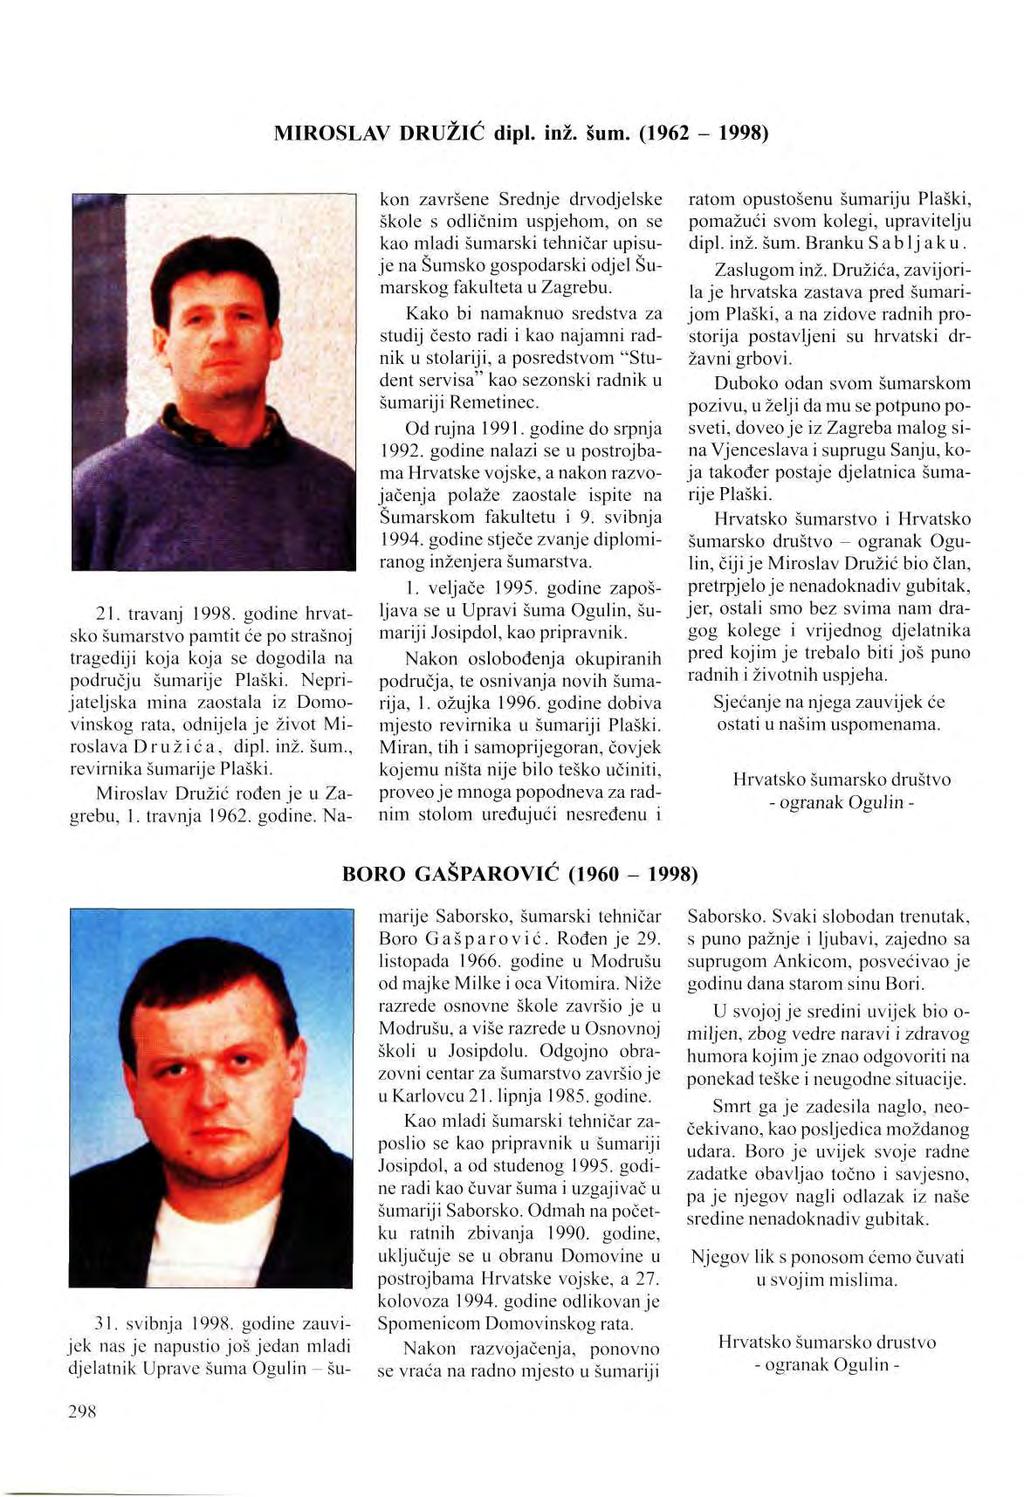 MIROSLAV DRUŽIĆ dipl. inž. šum. (1962-1998) 21. travanj 1998. godine hrvatsko šumarstvo pamtit će po strašnoj tragediji koja koja se dogodila na području šumarije Plaški.